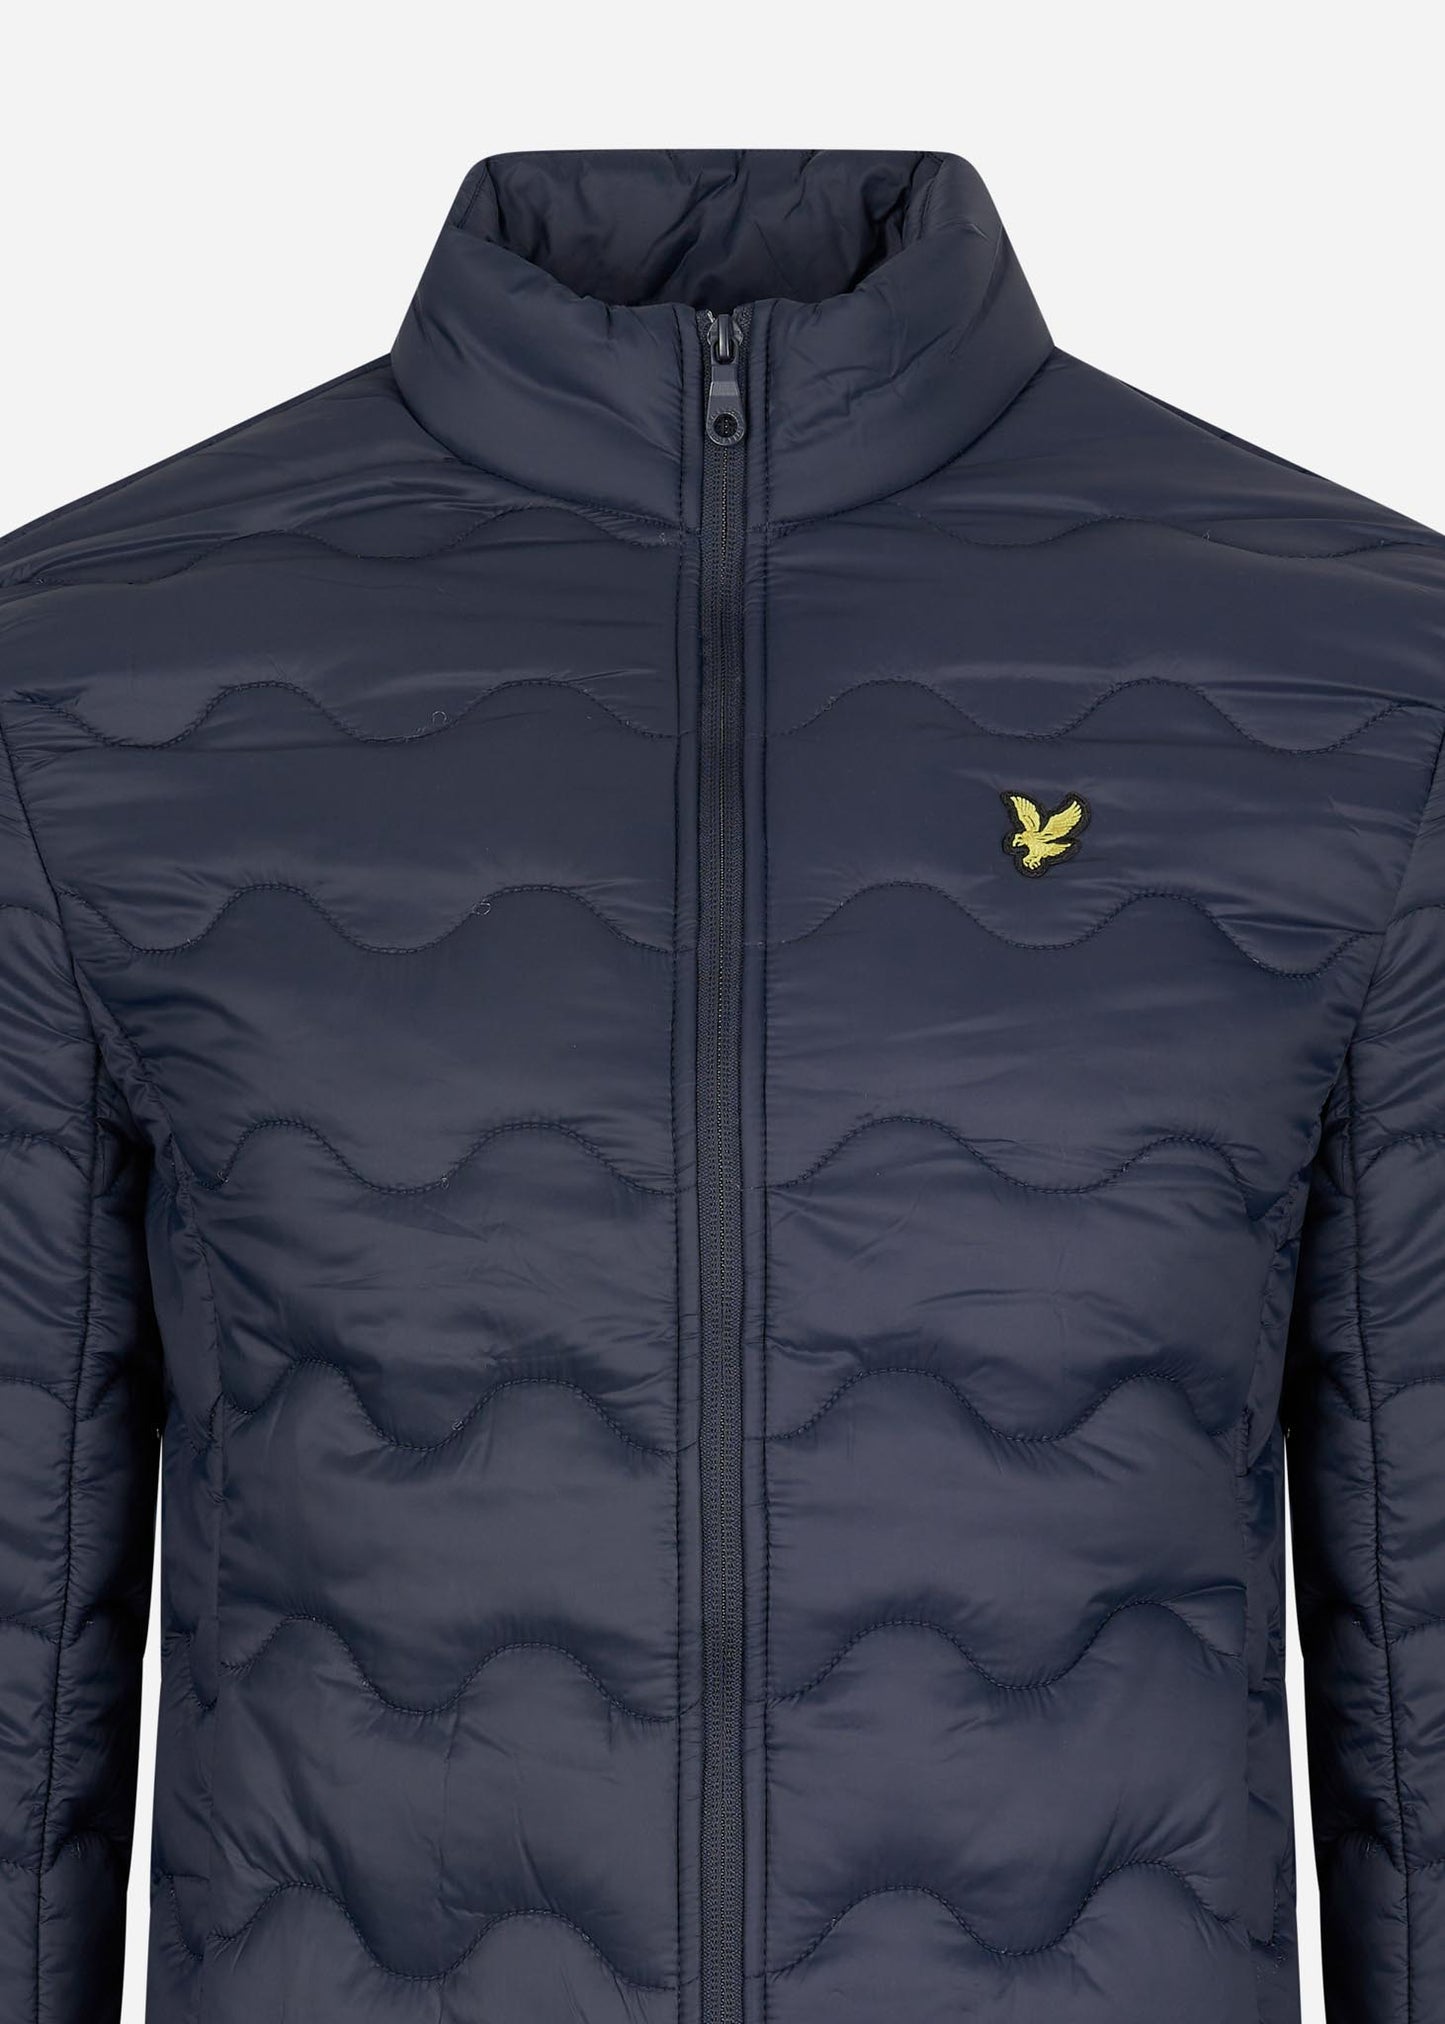 Crest quilted jacket - dark navy